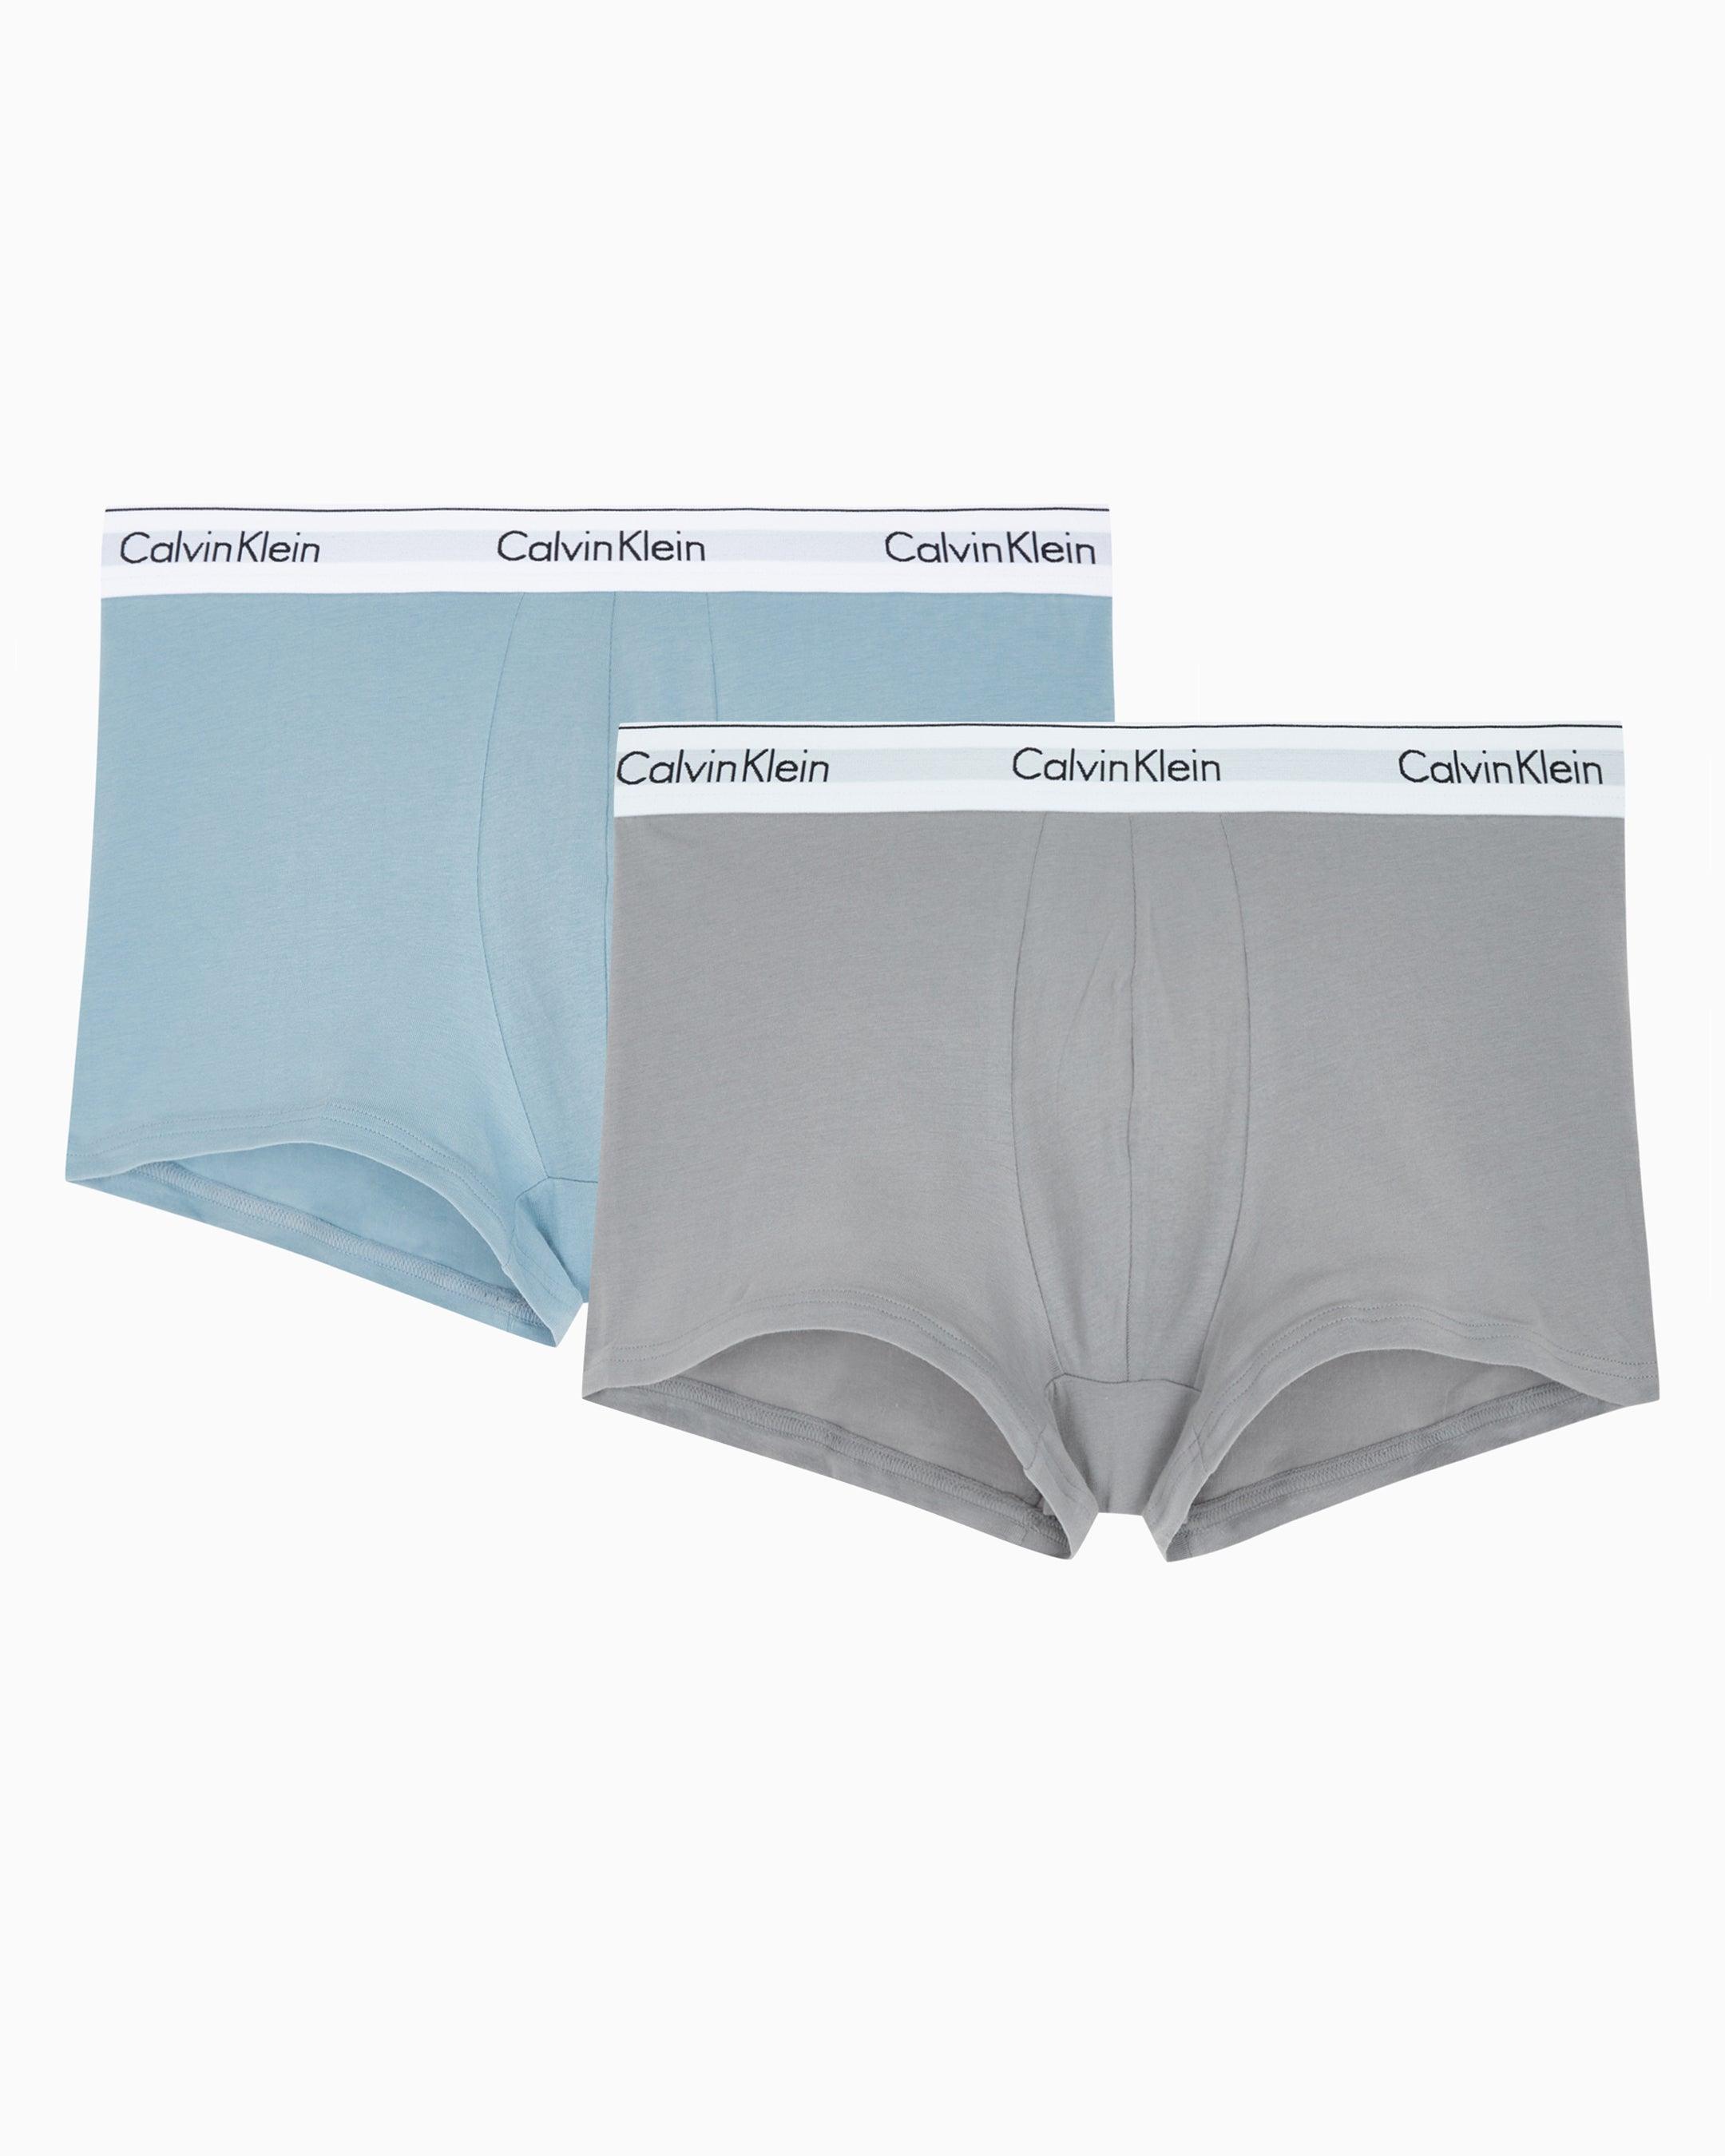 Calvin Klein Men's Cotton Stretch Boxer Briefs Blue S, 4 units